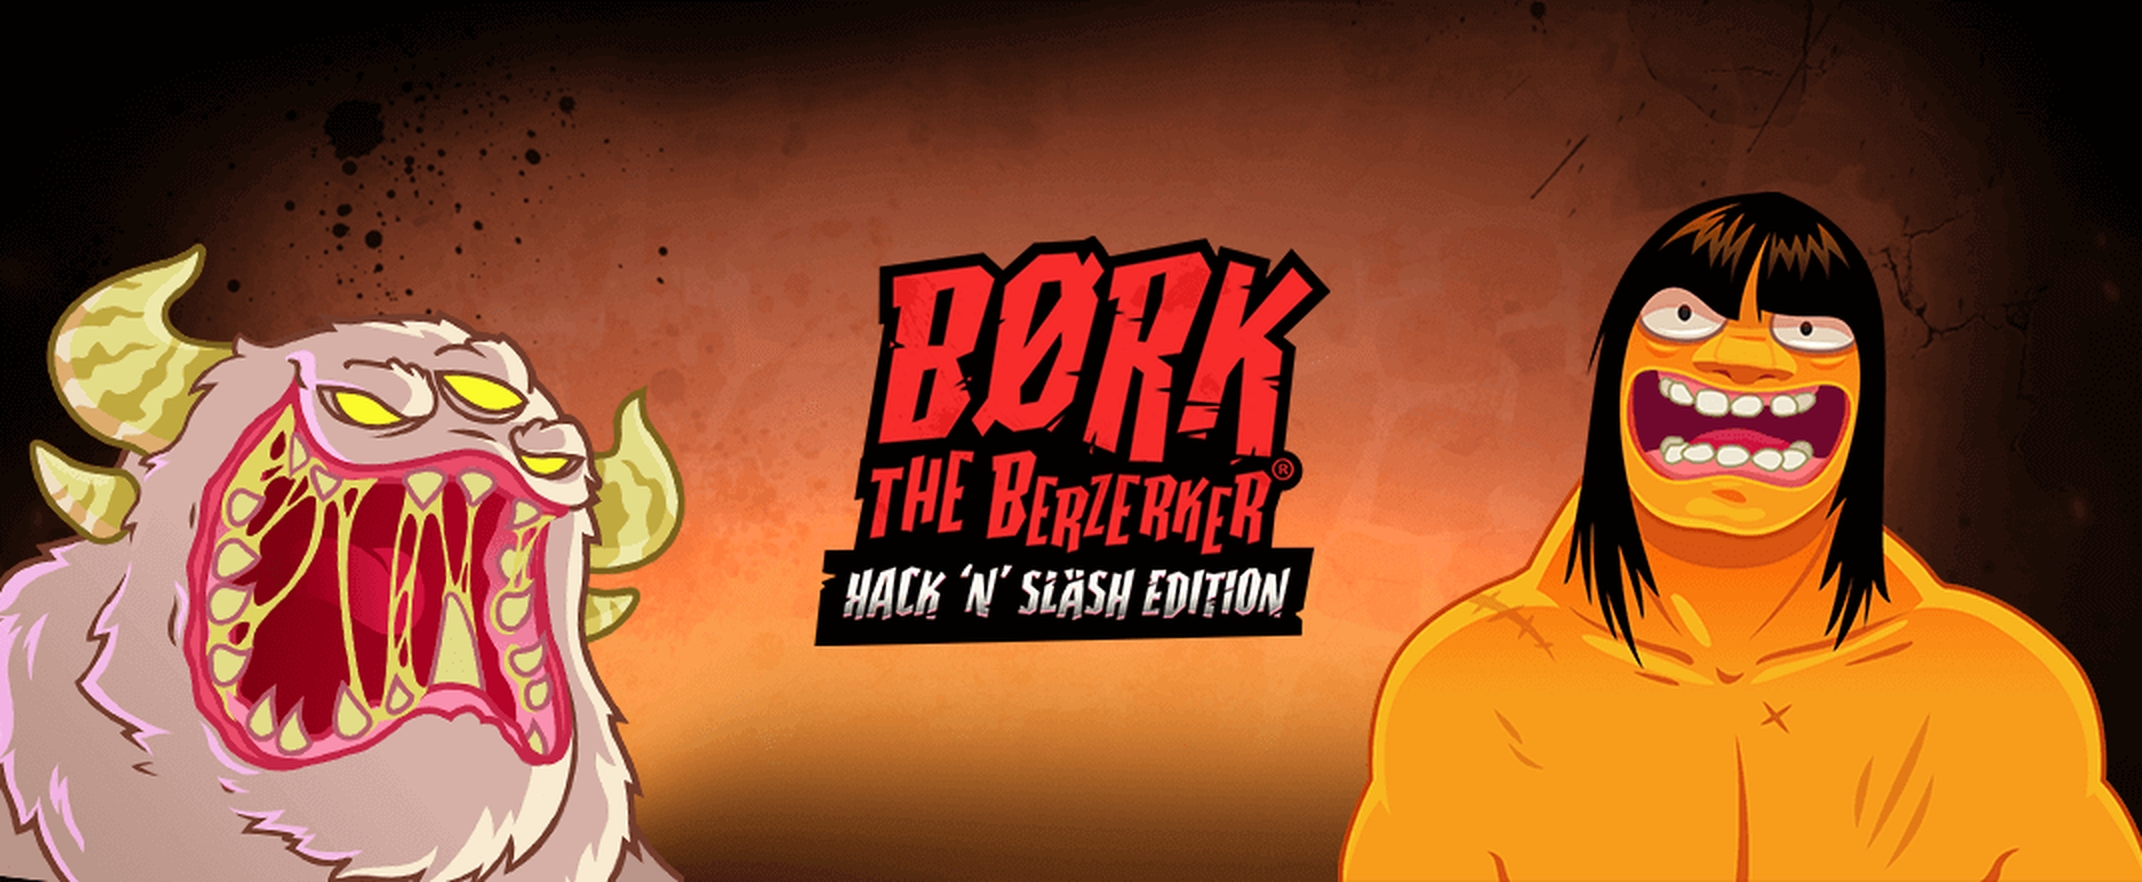 The Børk the Berzerker – Hack 'N' Slash Edition Online Slot Demo Game by Thunderkick